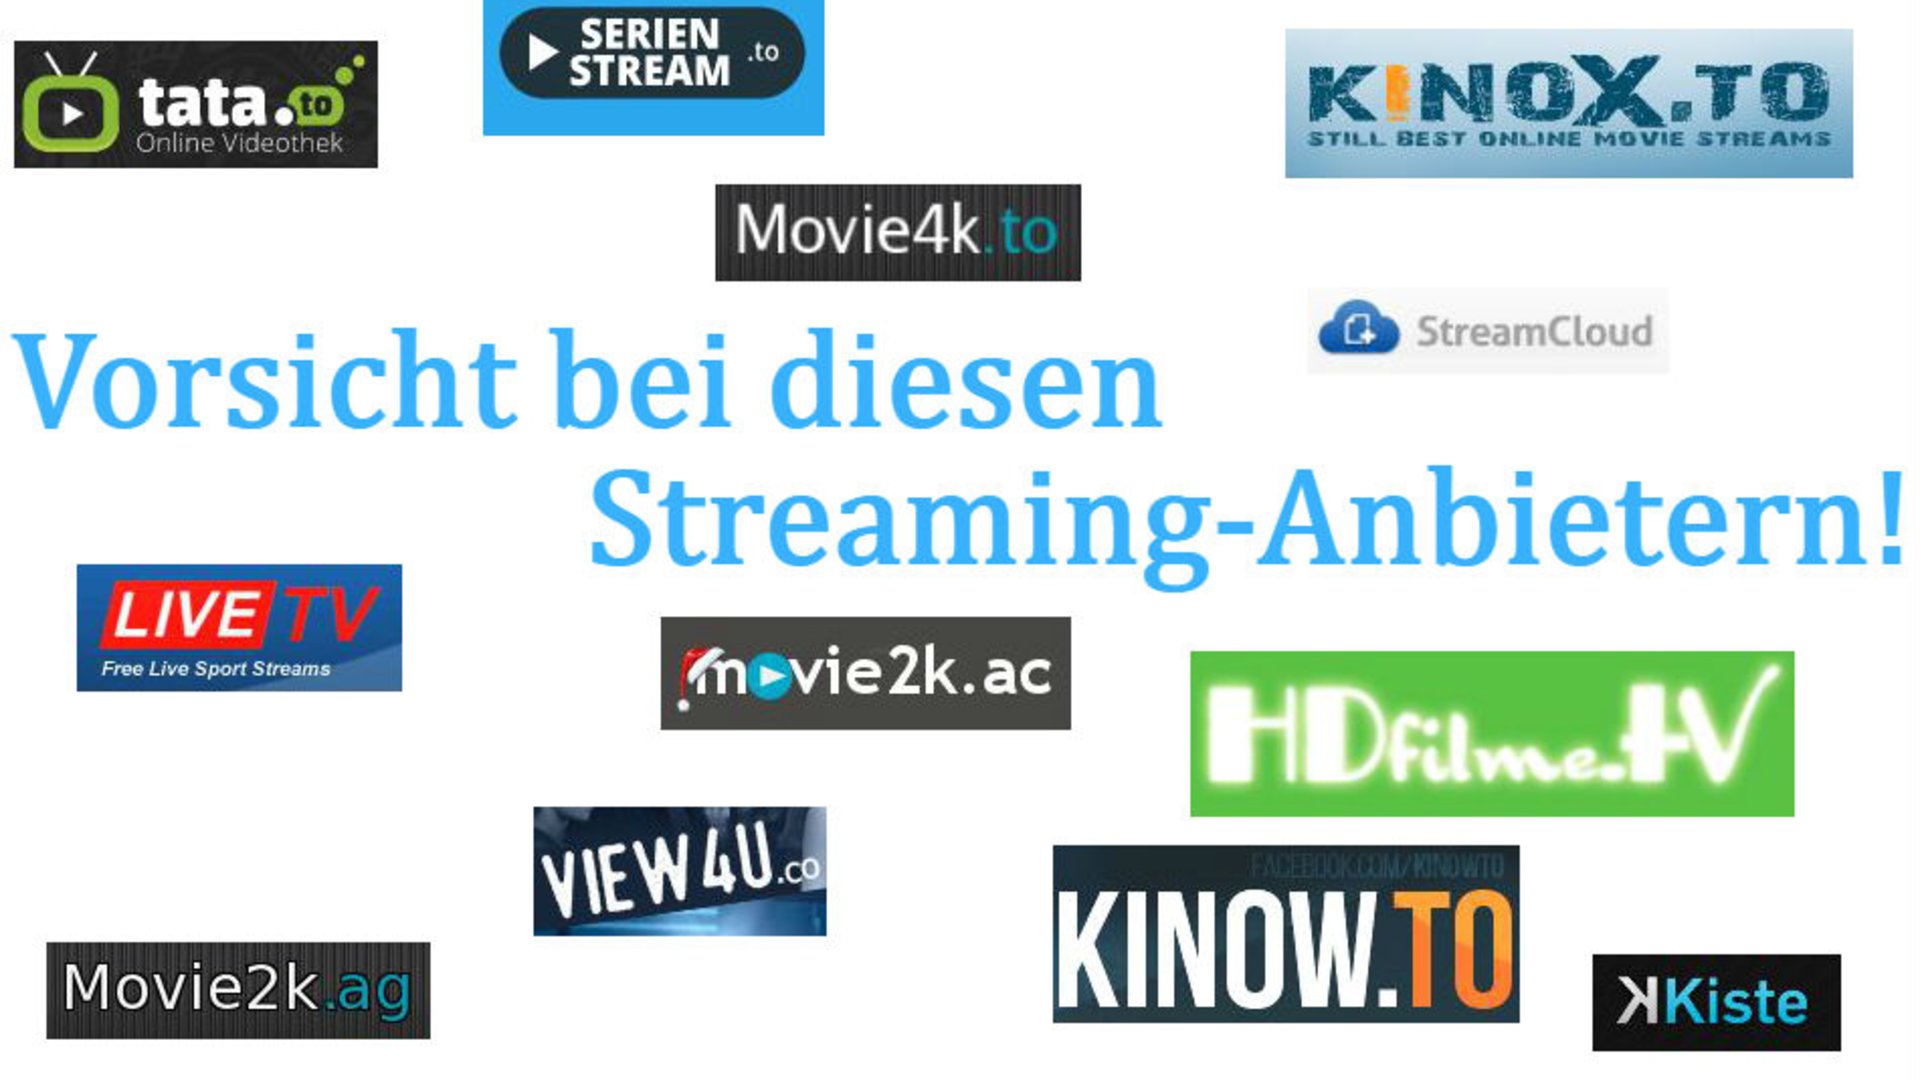 Movie4k and Alternativen Vorsicht bei diesen Streaminganbietern!